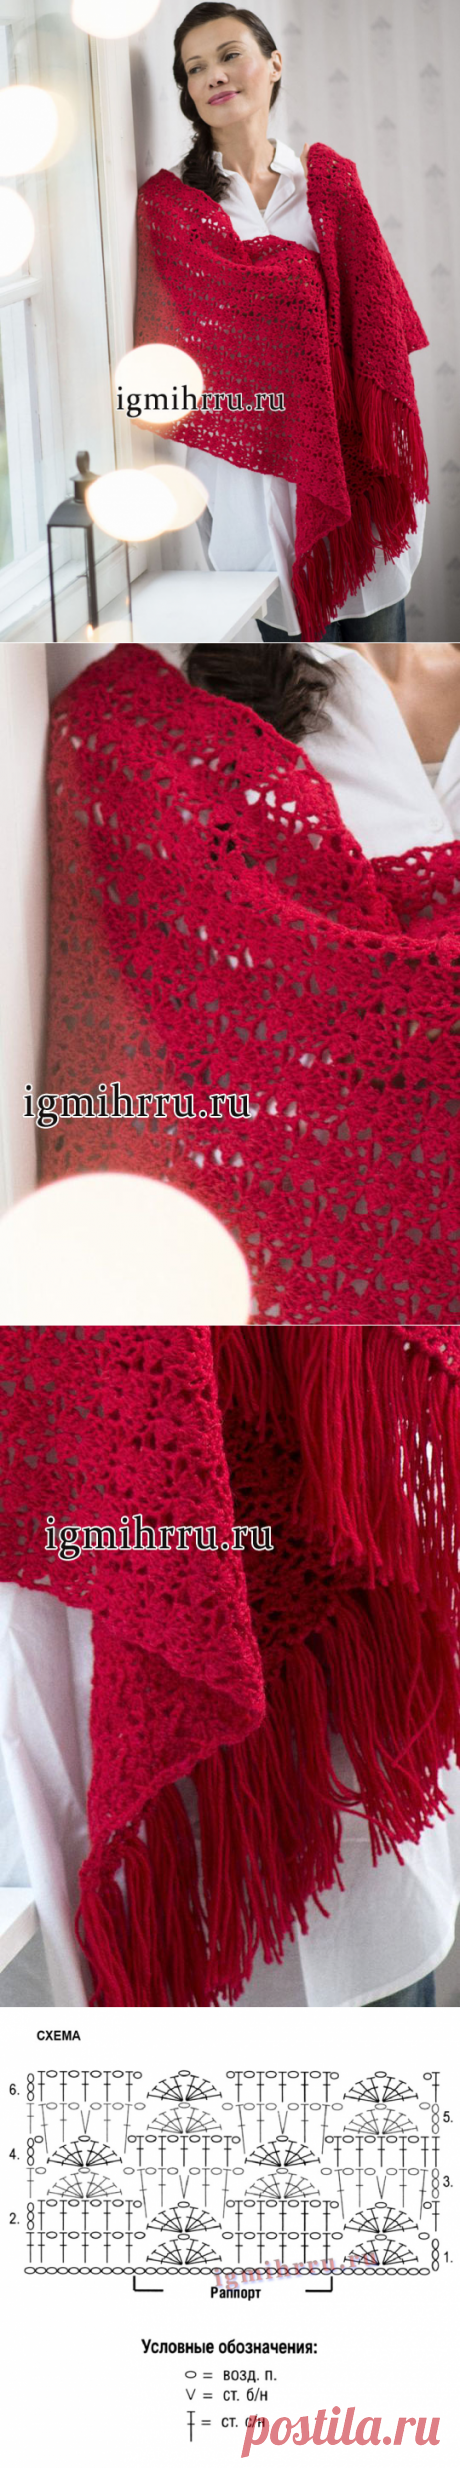 Красный ажурный палантин с бахромой. Вязание крючком